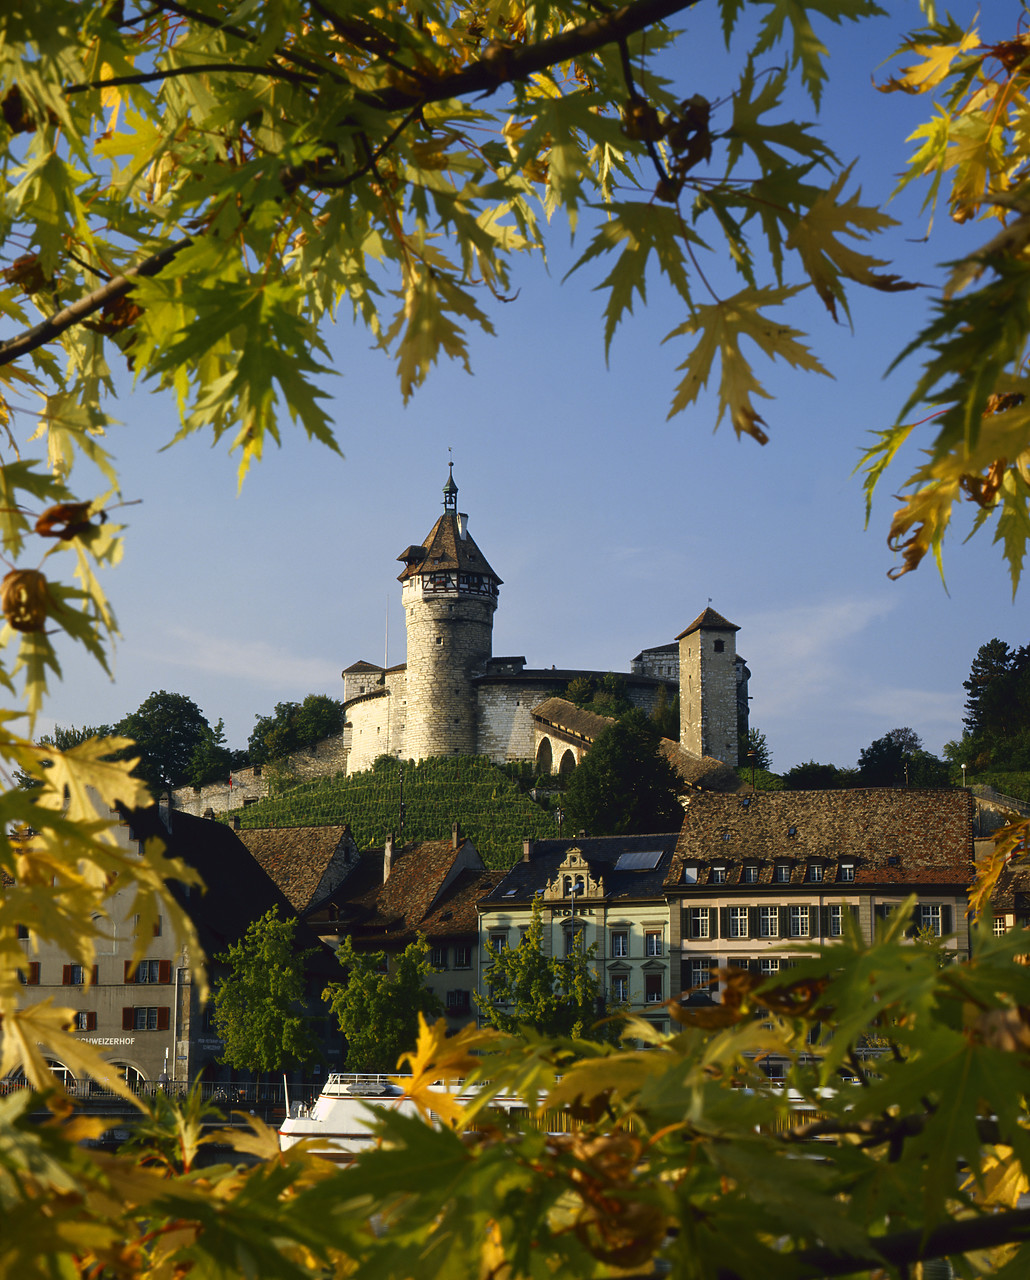 #85524 - Castle Munot, Schaffhausen, Switzerland